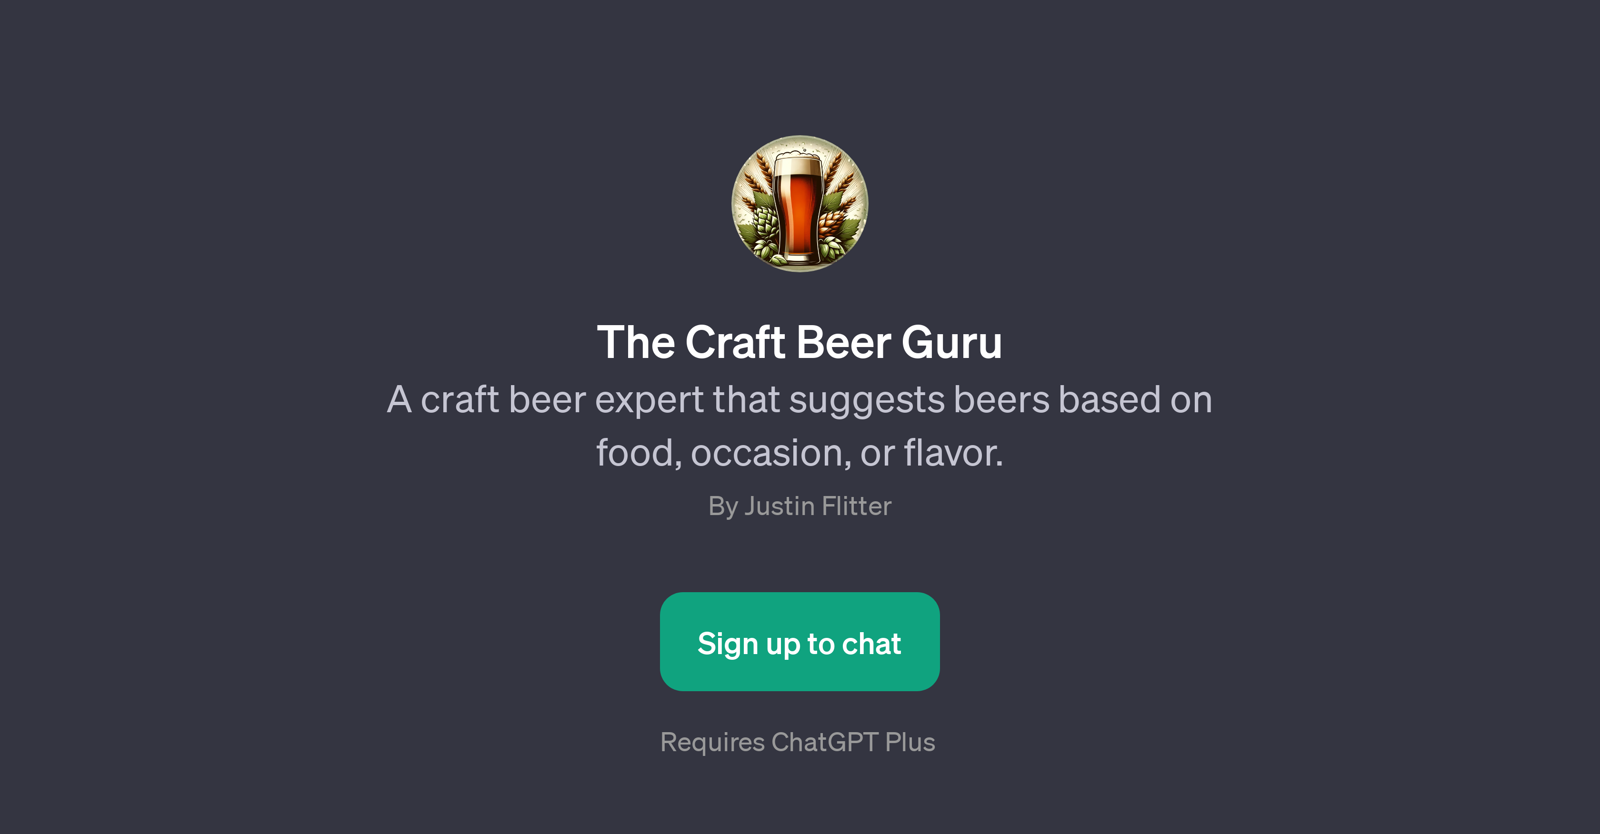 The Craft Beer Guru website